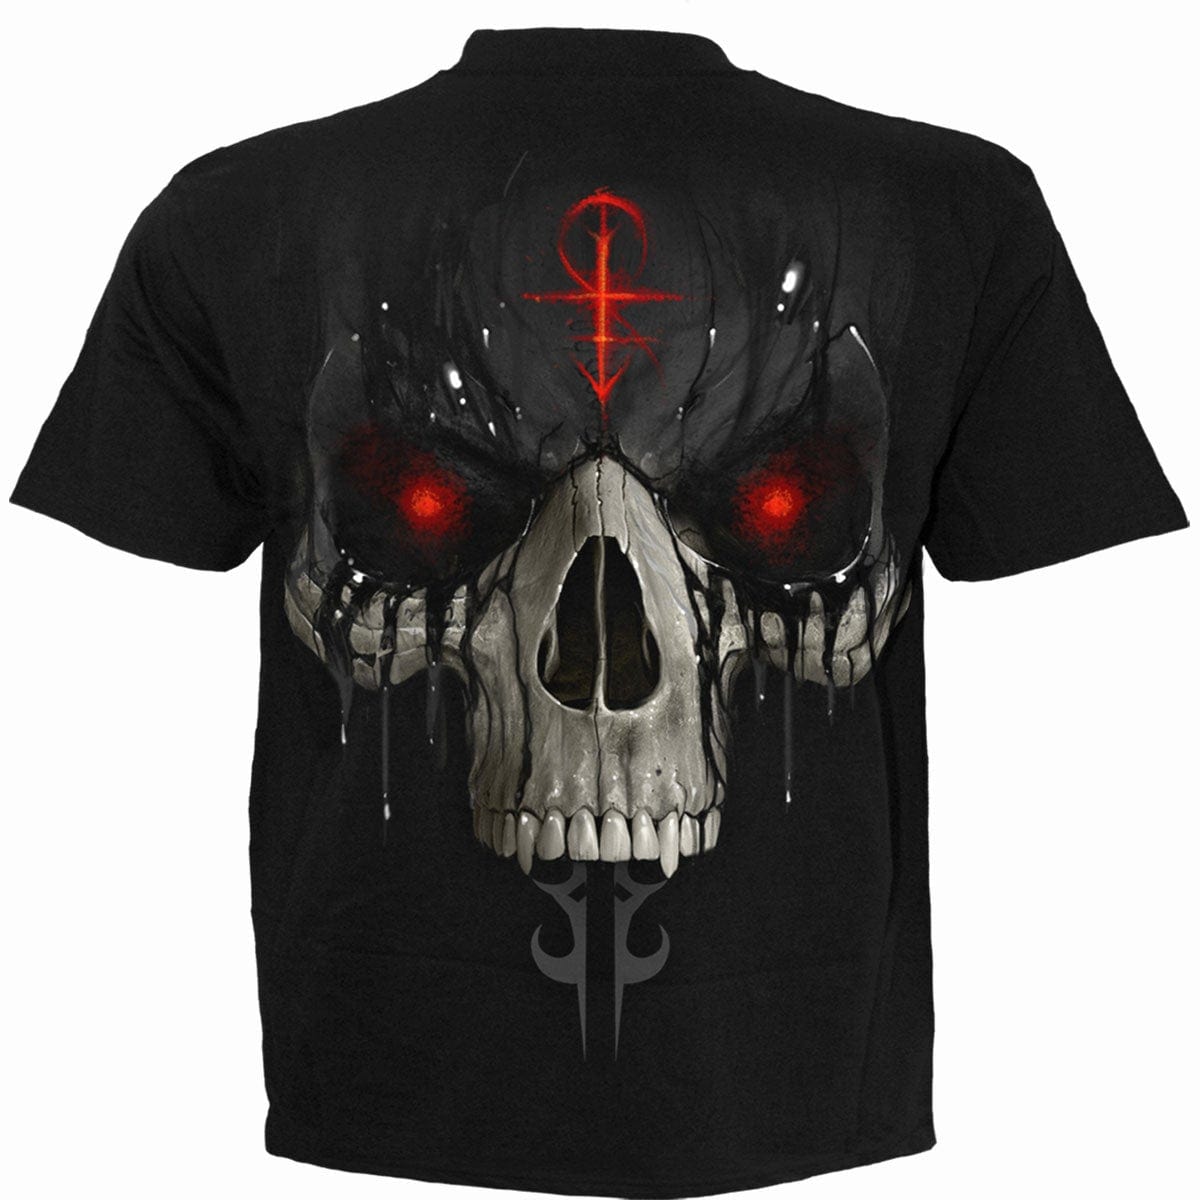 DARK DEATH - T-Shirt Black - Spiral USA